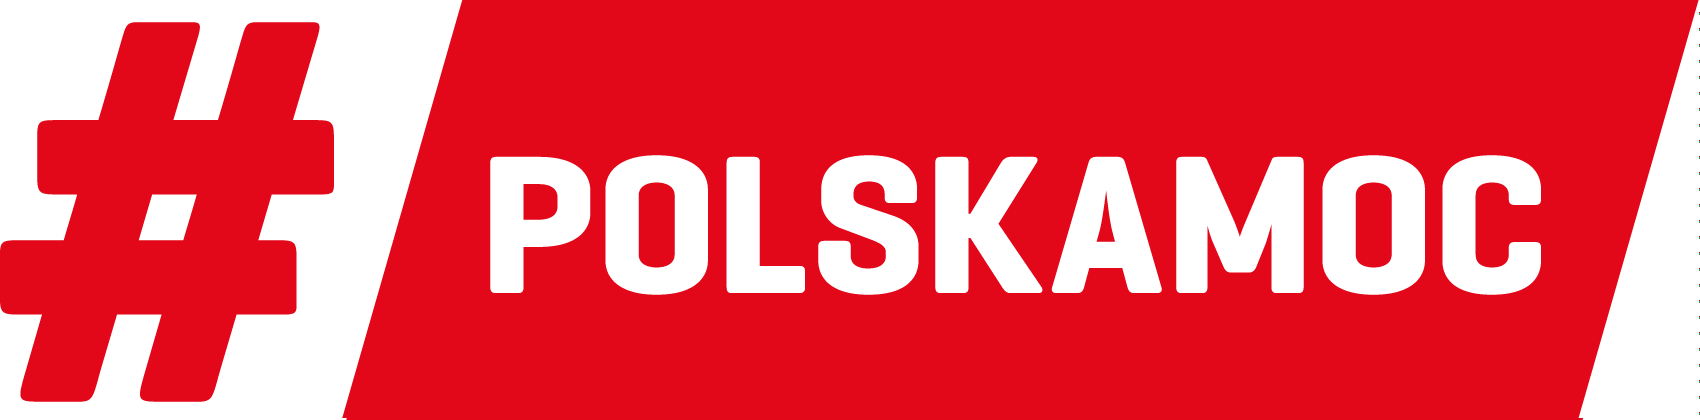 #polskamoc